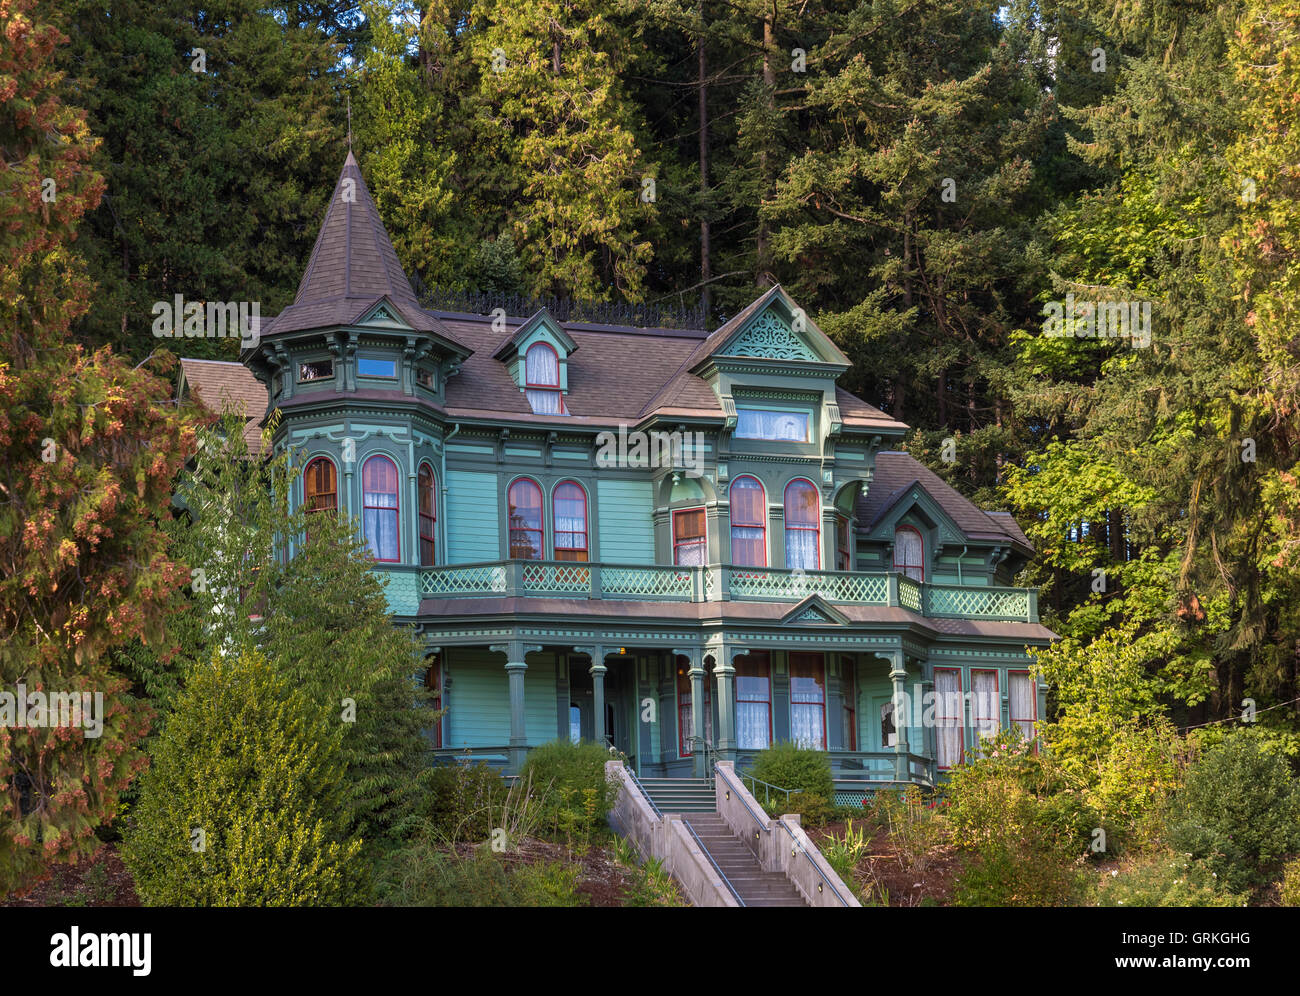 The Shelton McMurphey Johnson House in Eugene, Oregon. Stock Photo